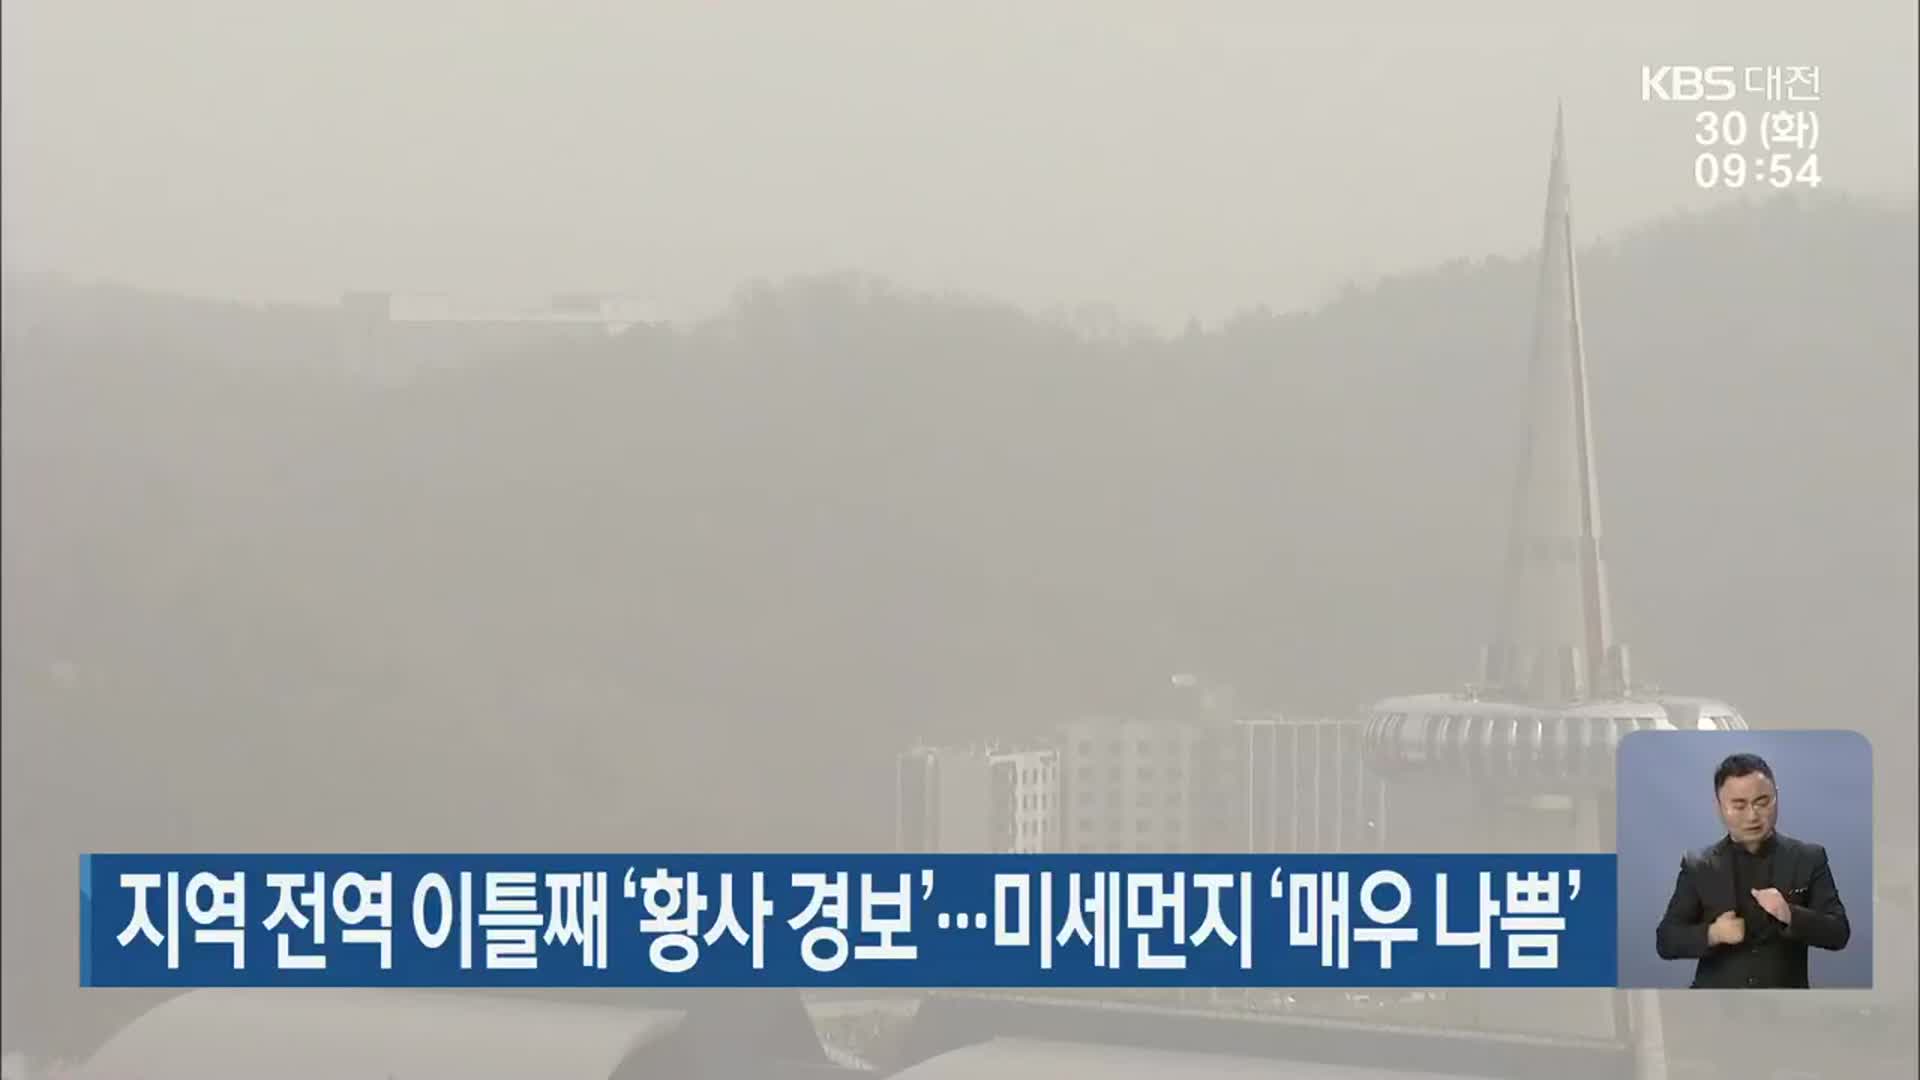 대전·세종·충남 지역 전역 이틀째 ‘황사 경보’…미세먼지 ‘매우 나쁨’